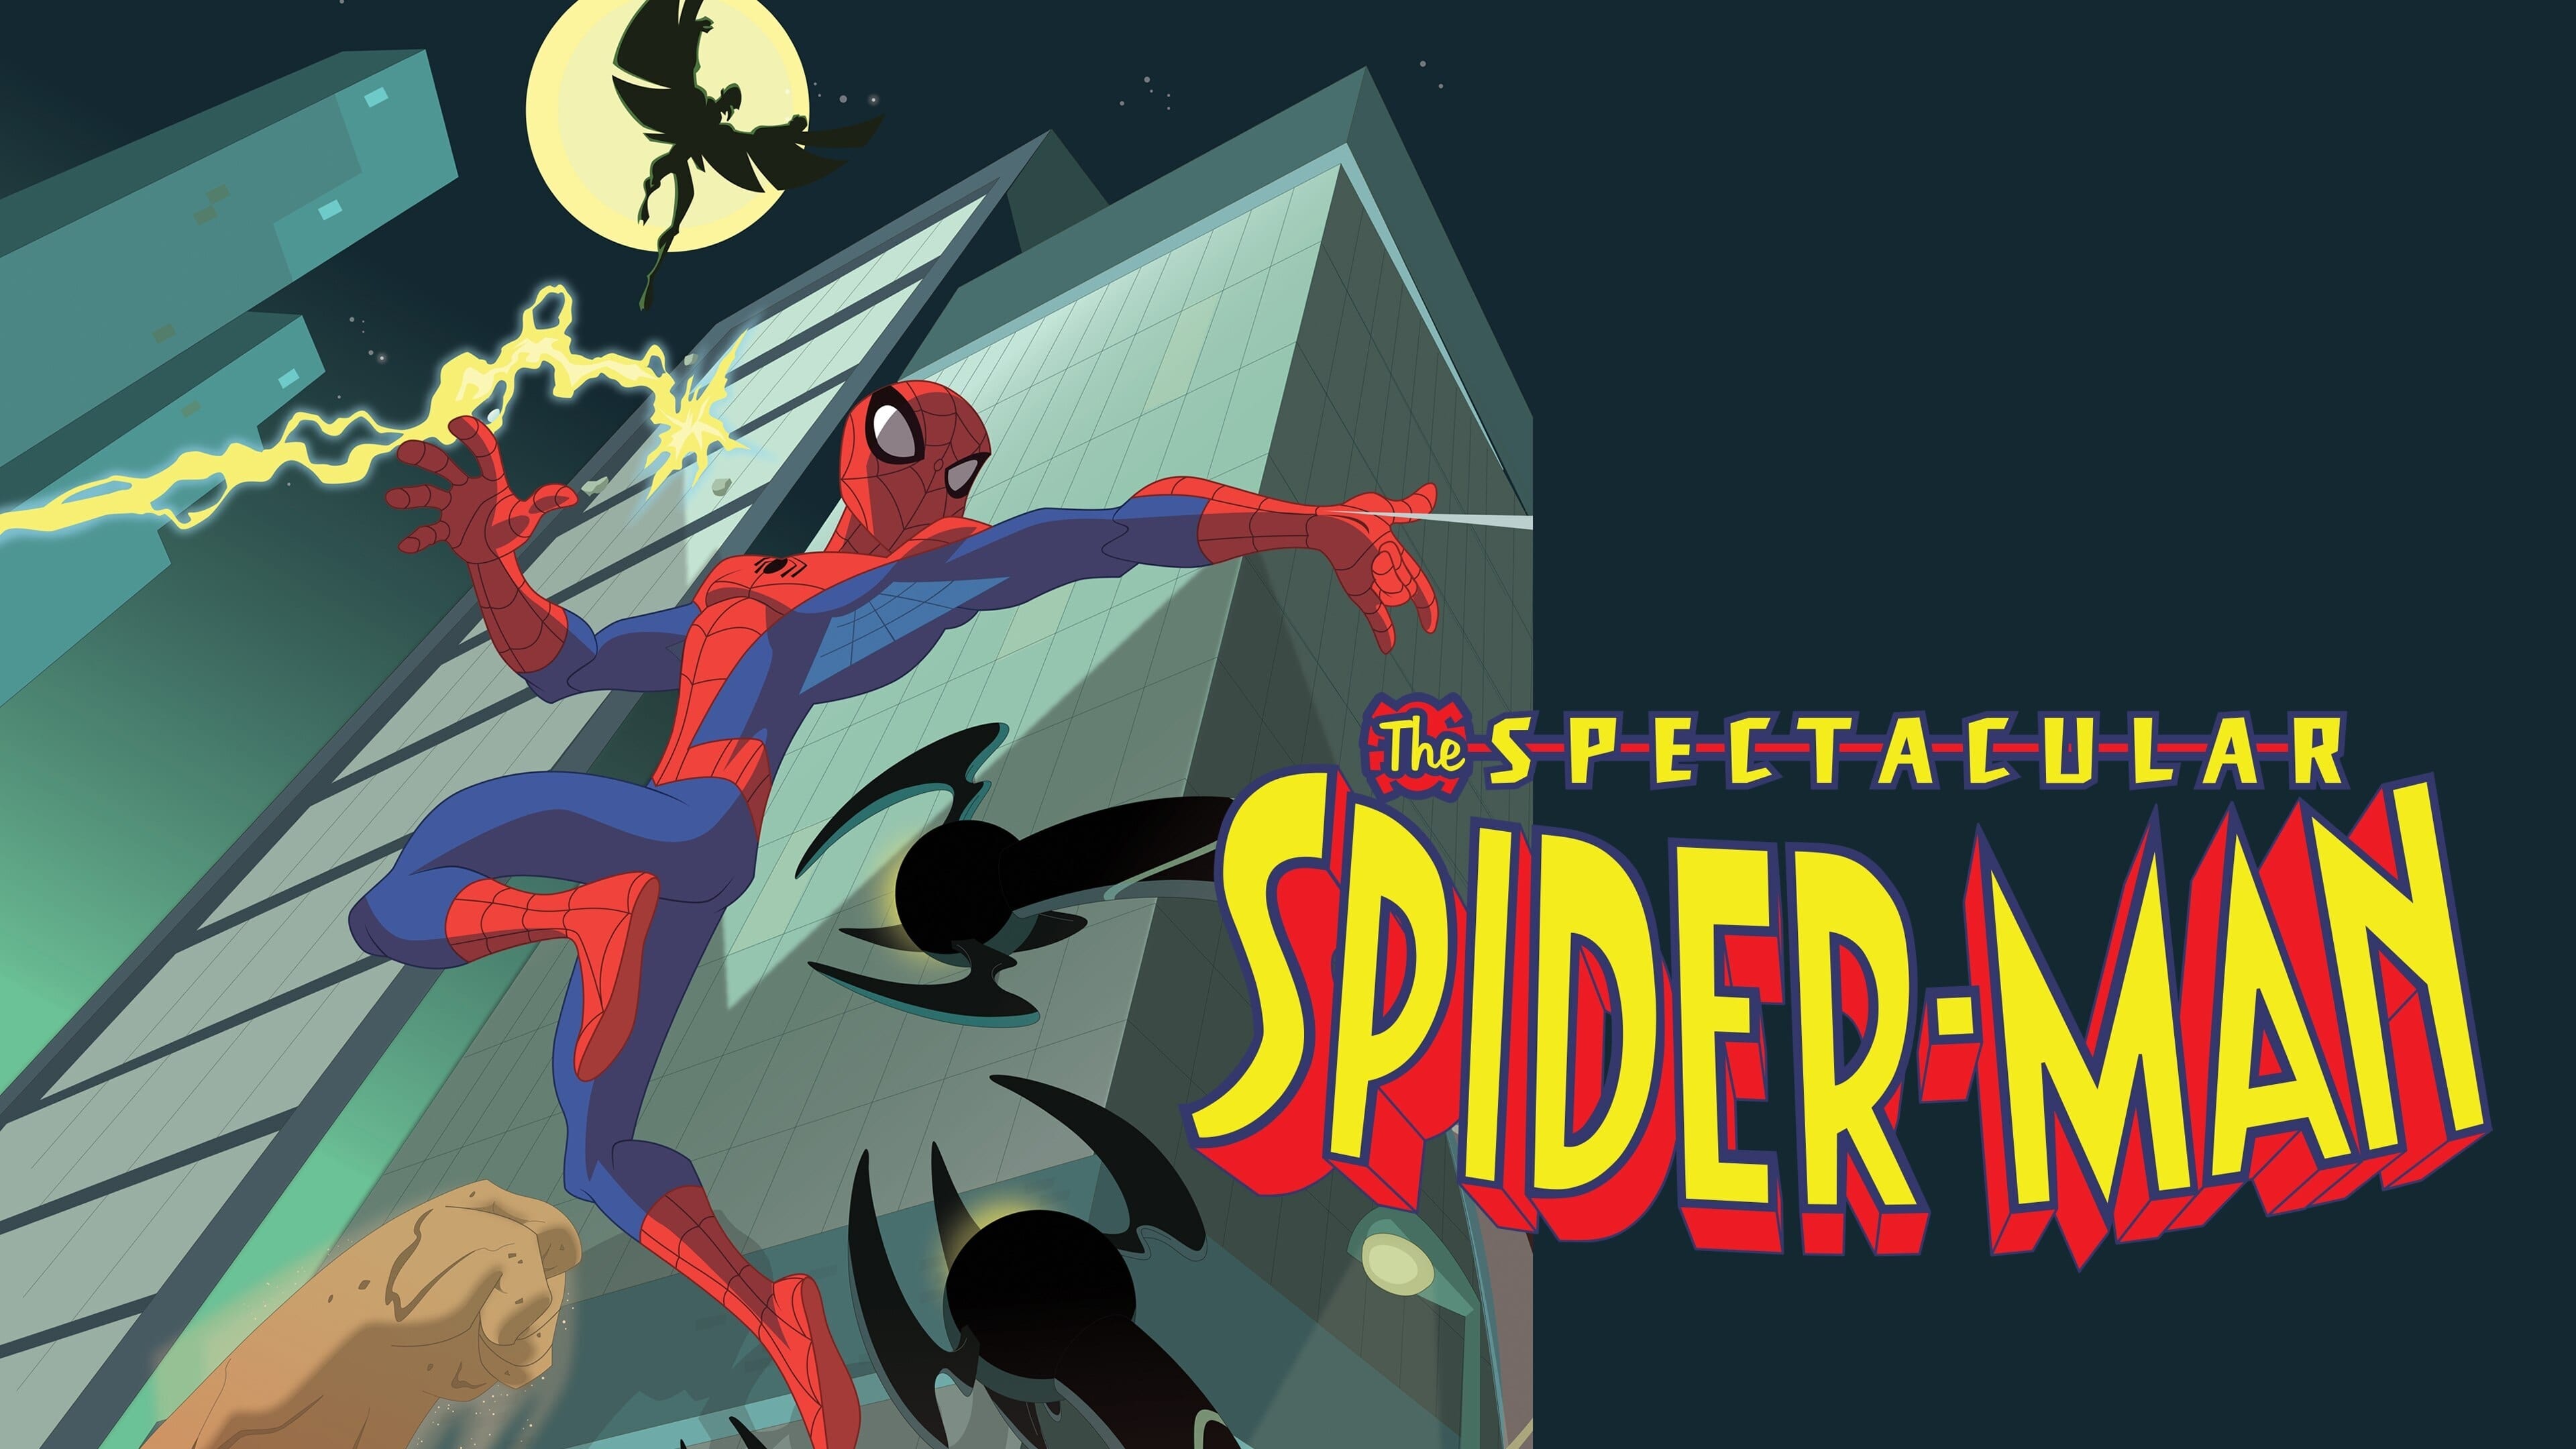 Los mejores fondos de pantalla de El Espectacular Spider Man para la pantalla del teléfono